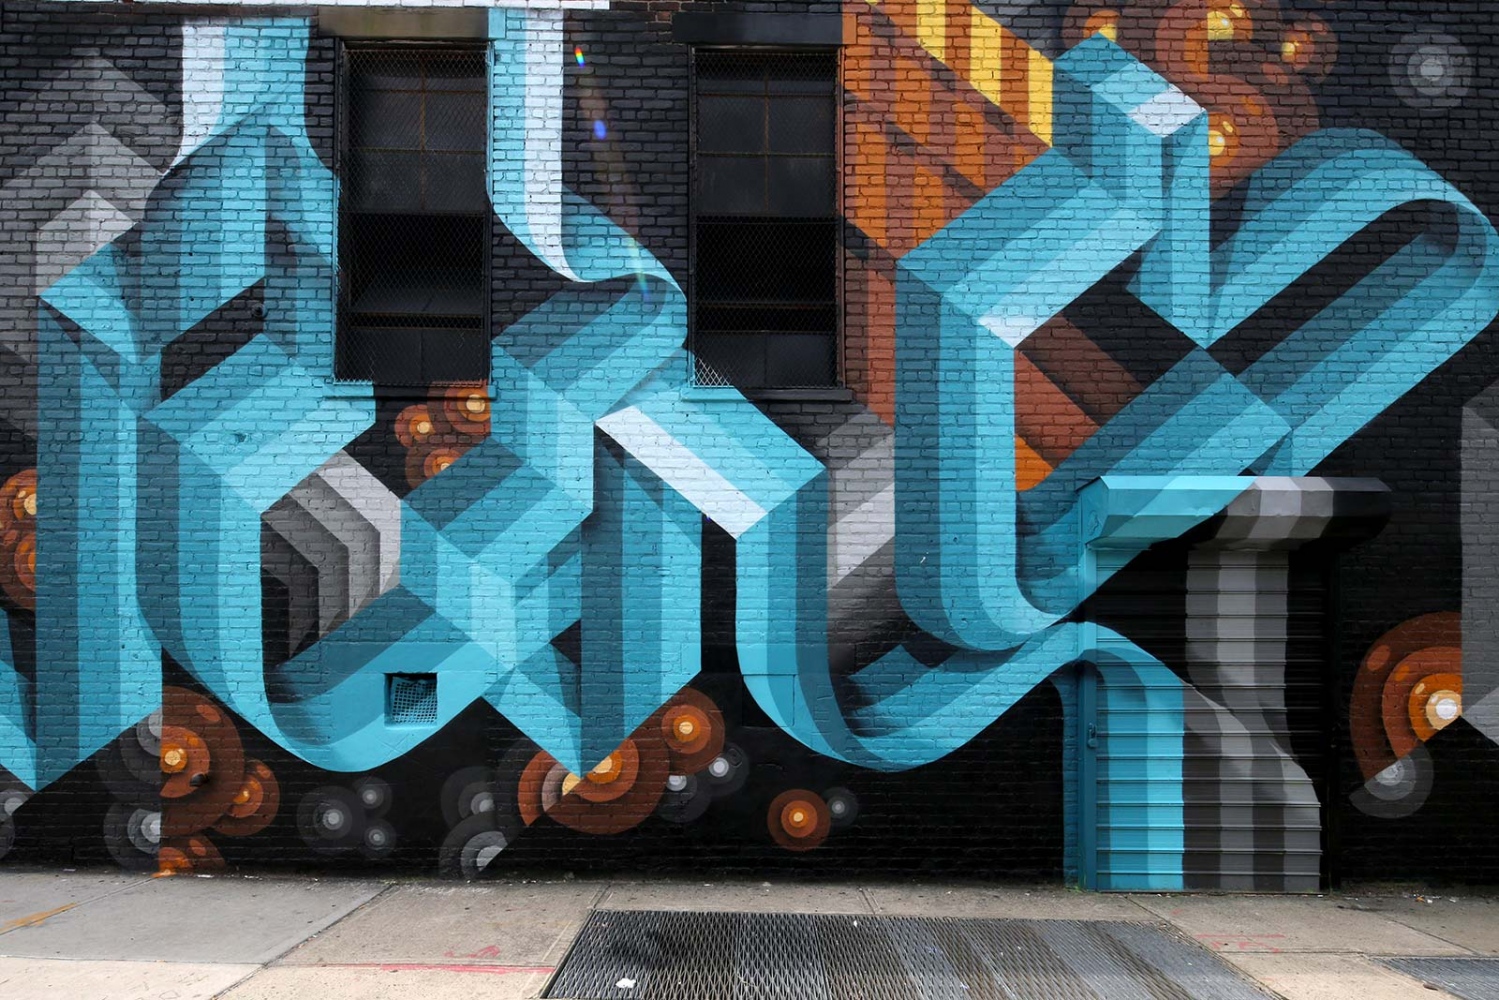 Graffiti Art - Bushwick - Brooklyn - NY